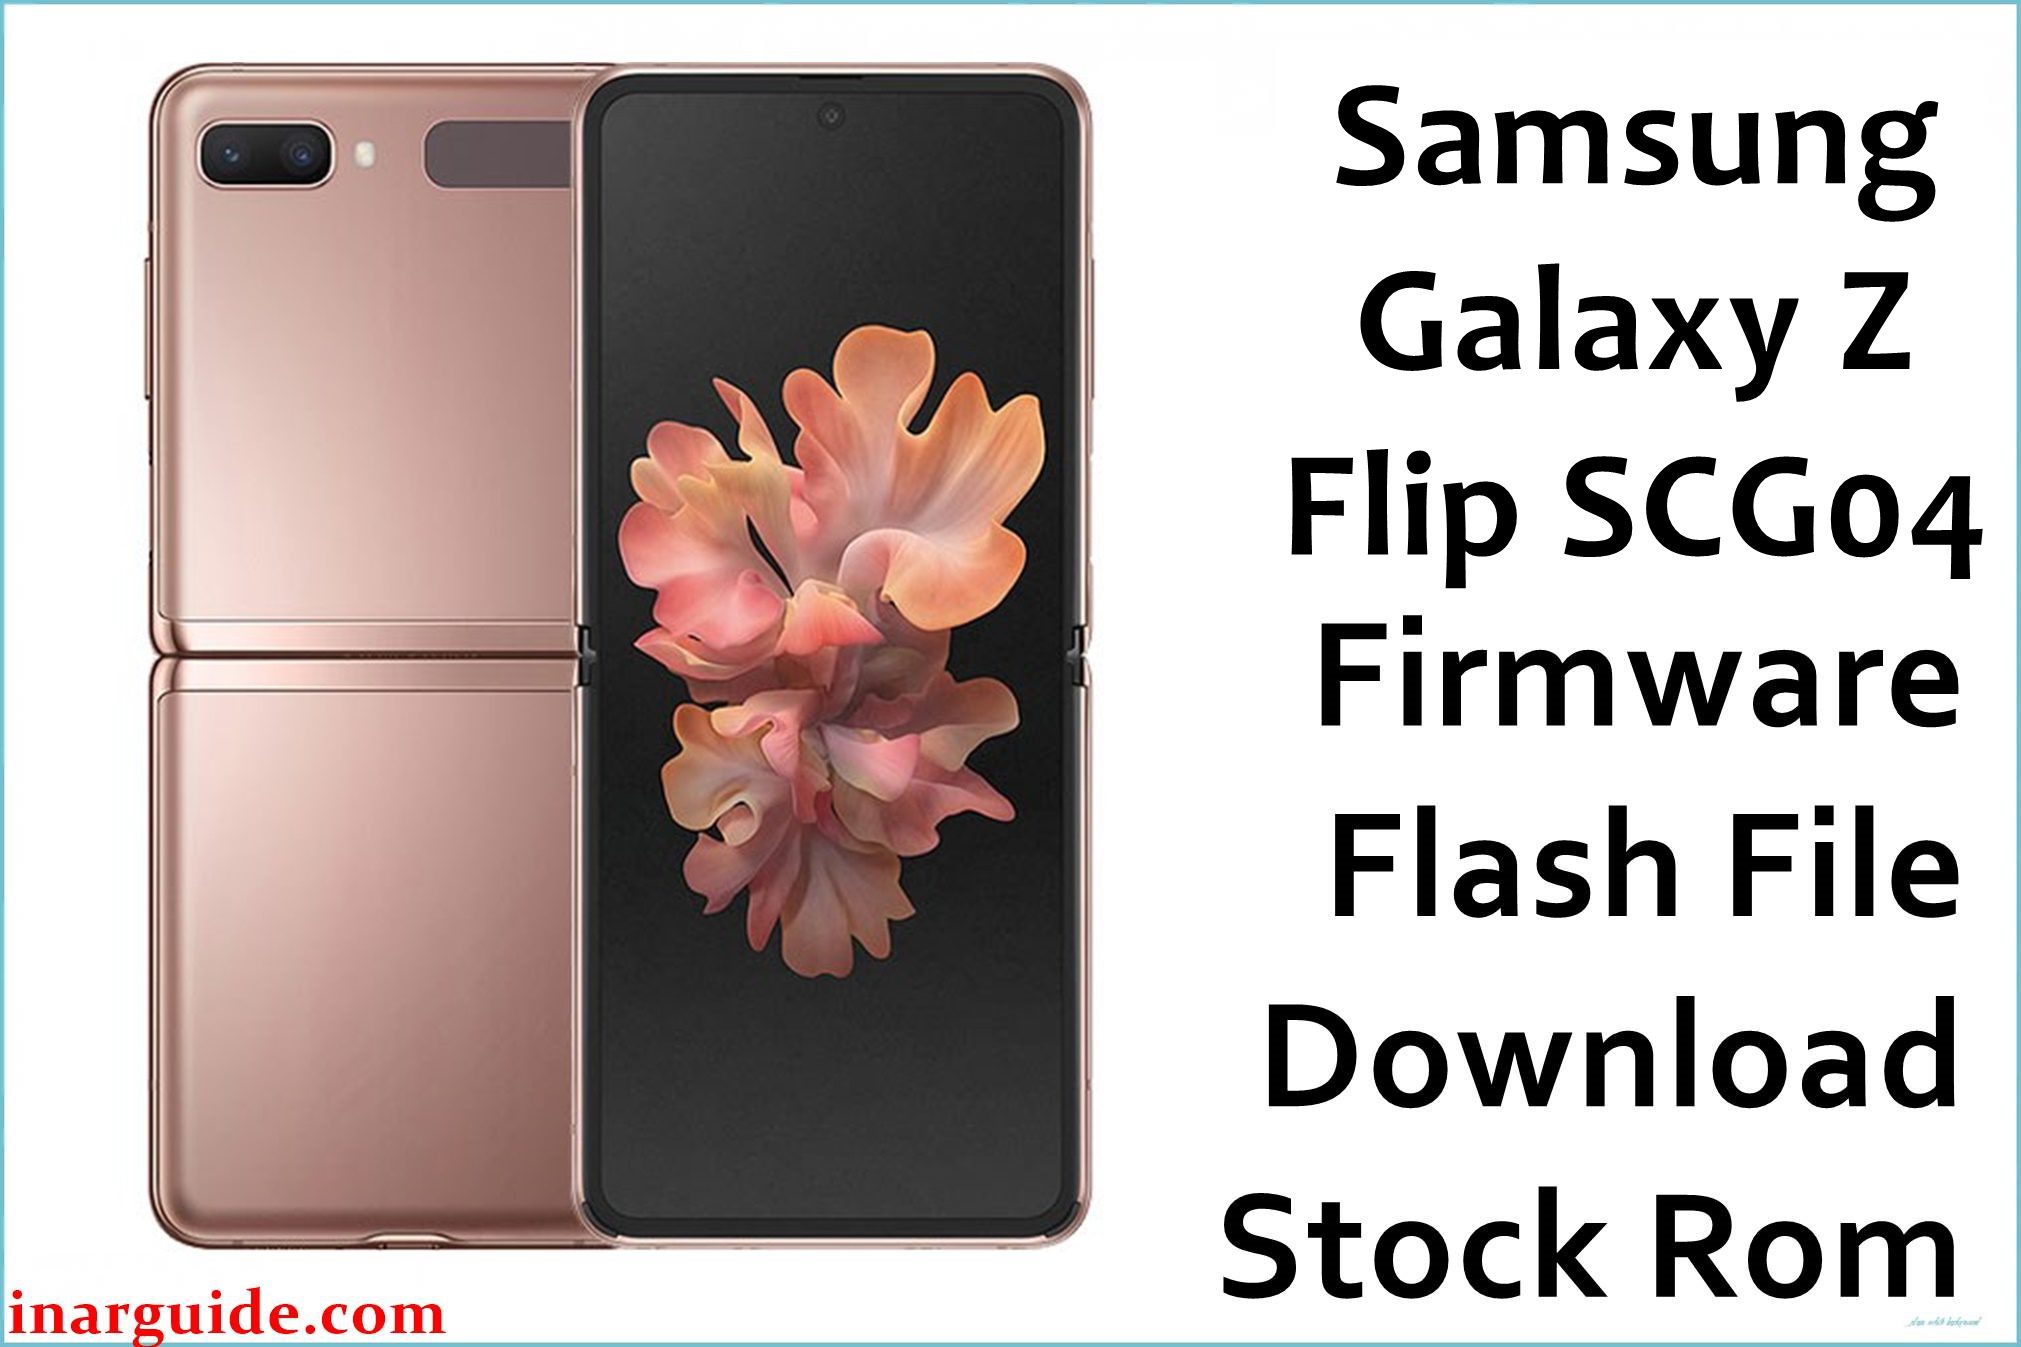 Samsung Galaxy Z Flip SCG04